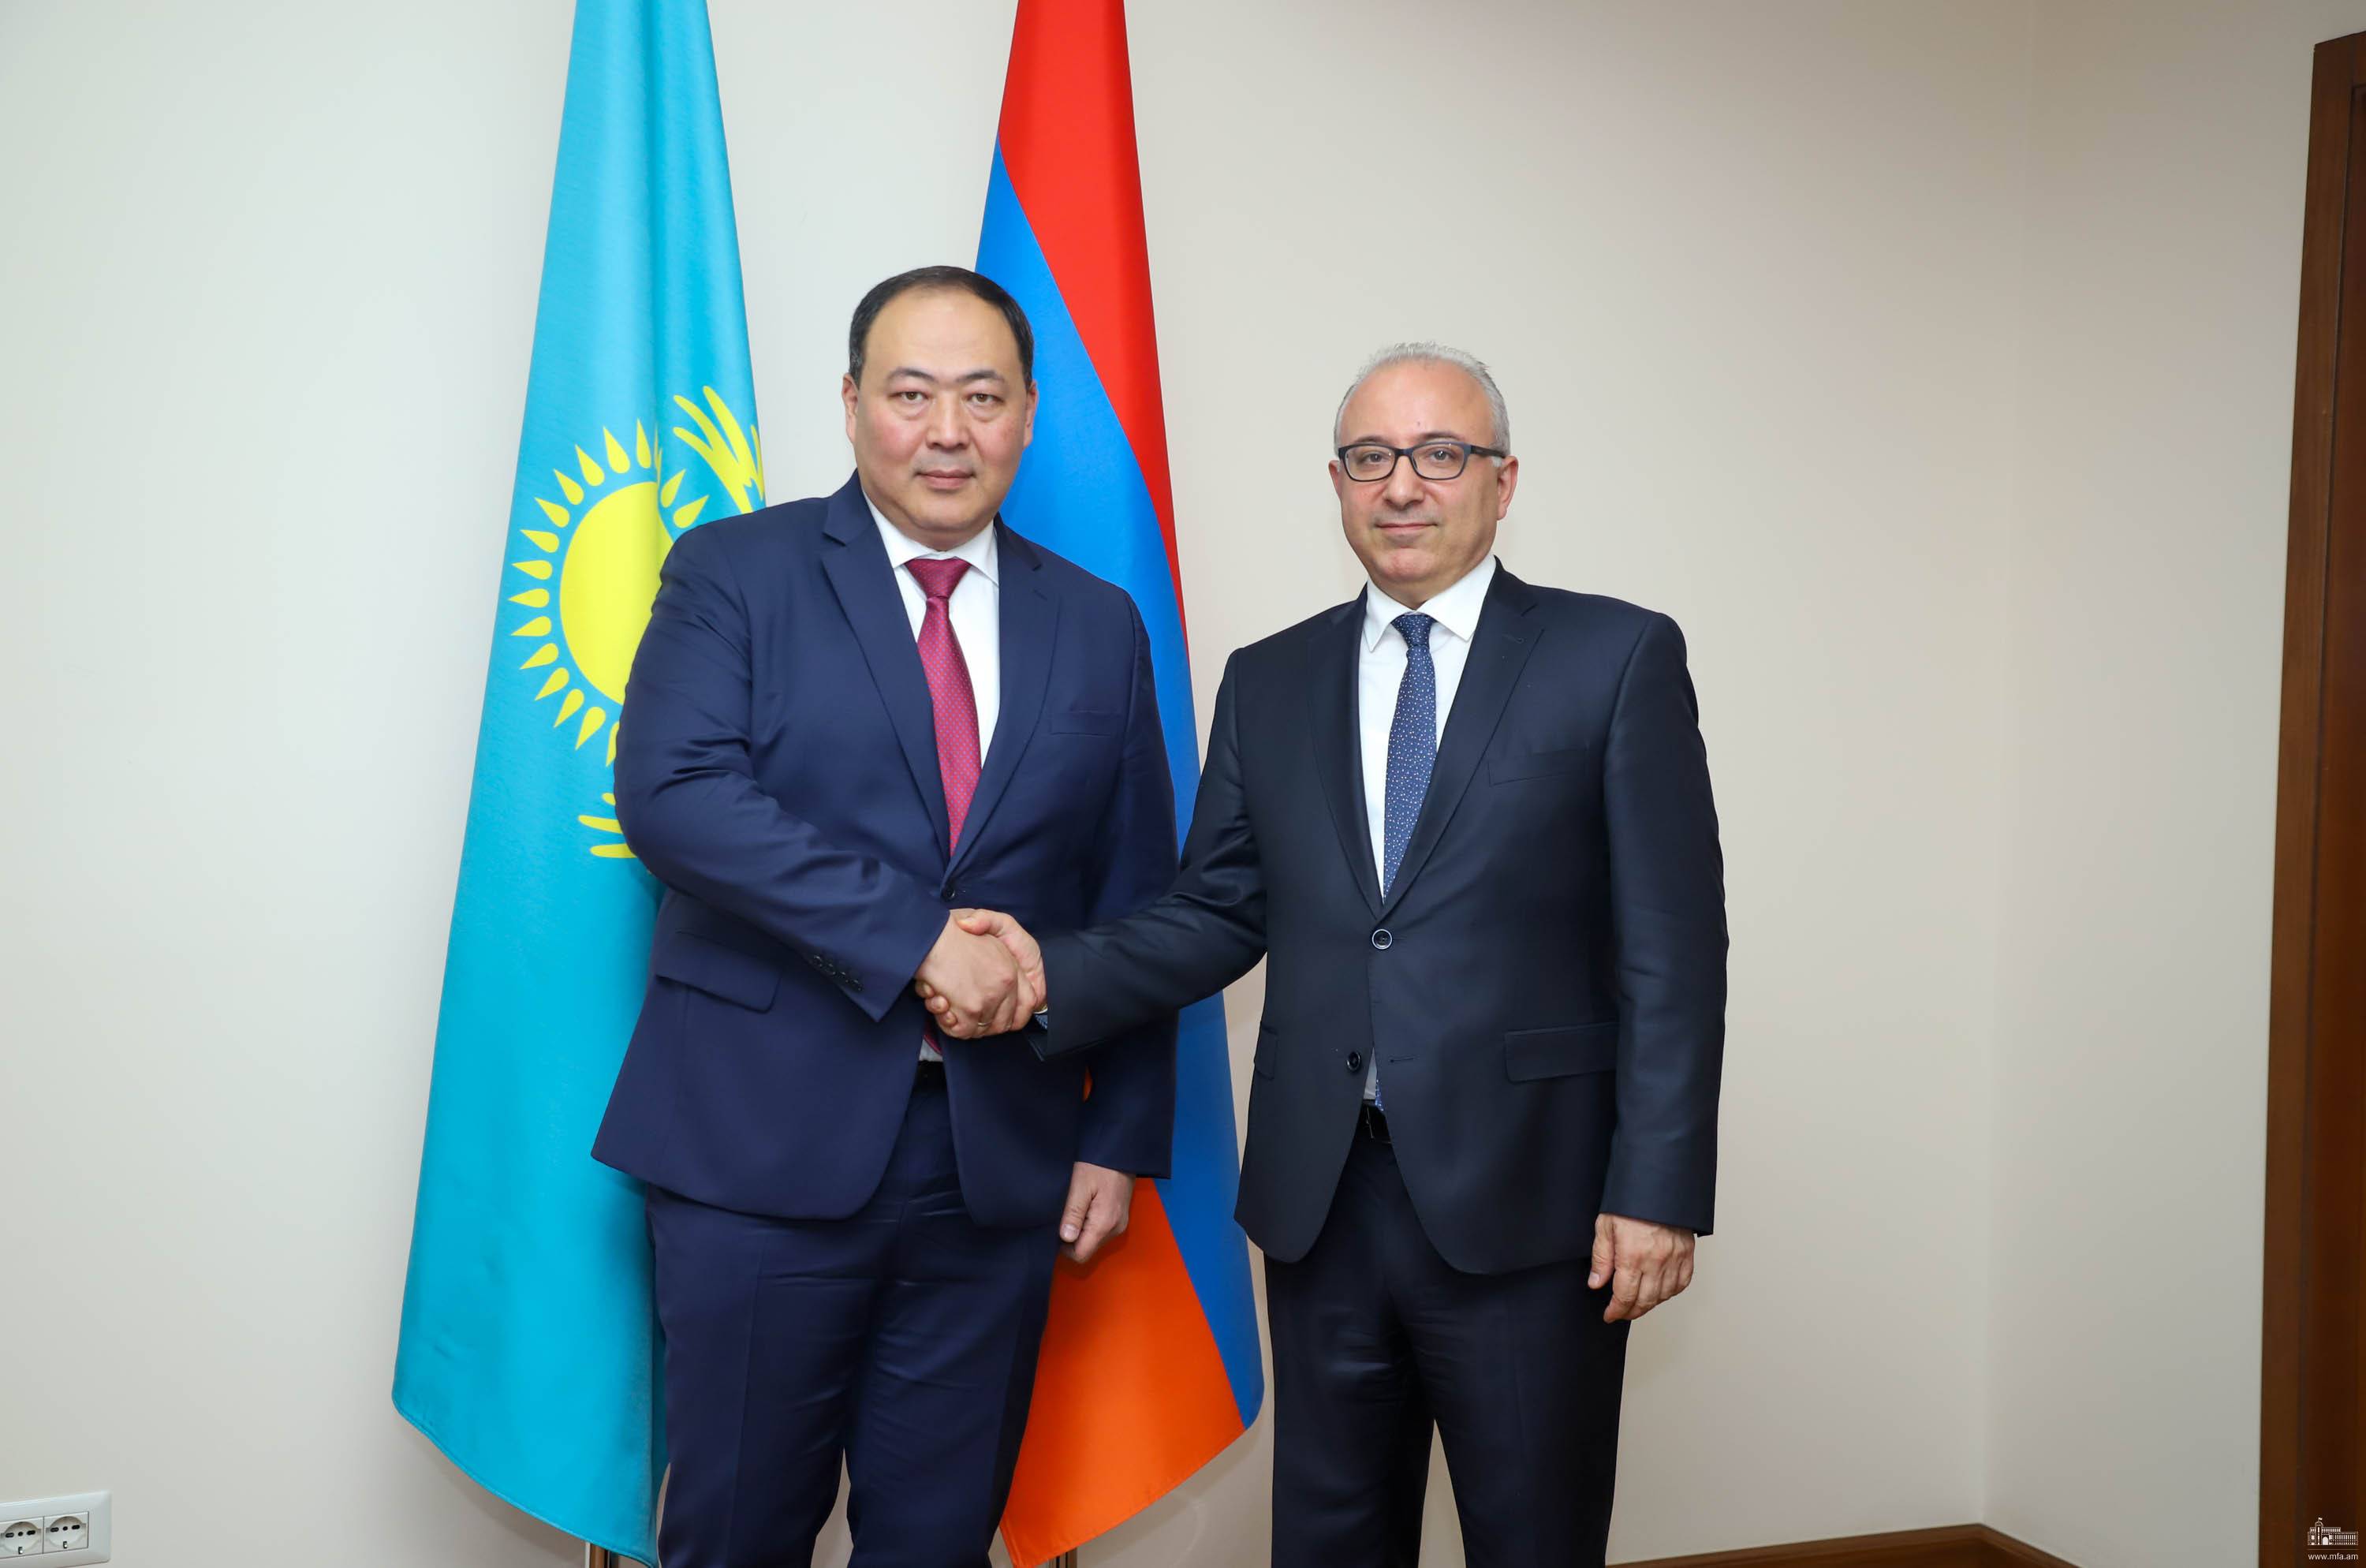 Հայաստանի և Ղազախստանի արտաքին գործերի նախարարությունների միջև անցկացվել են քաղաքական խորհրդակցություններ